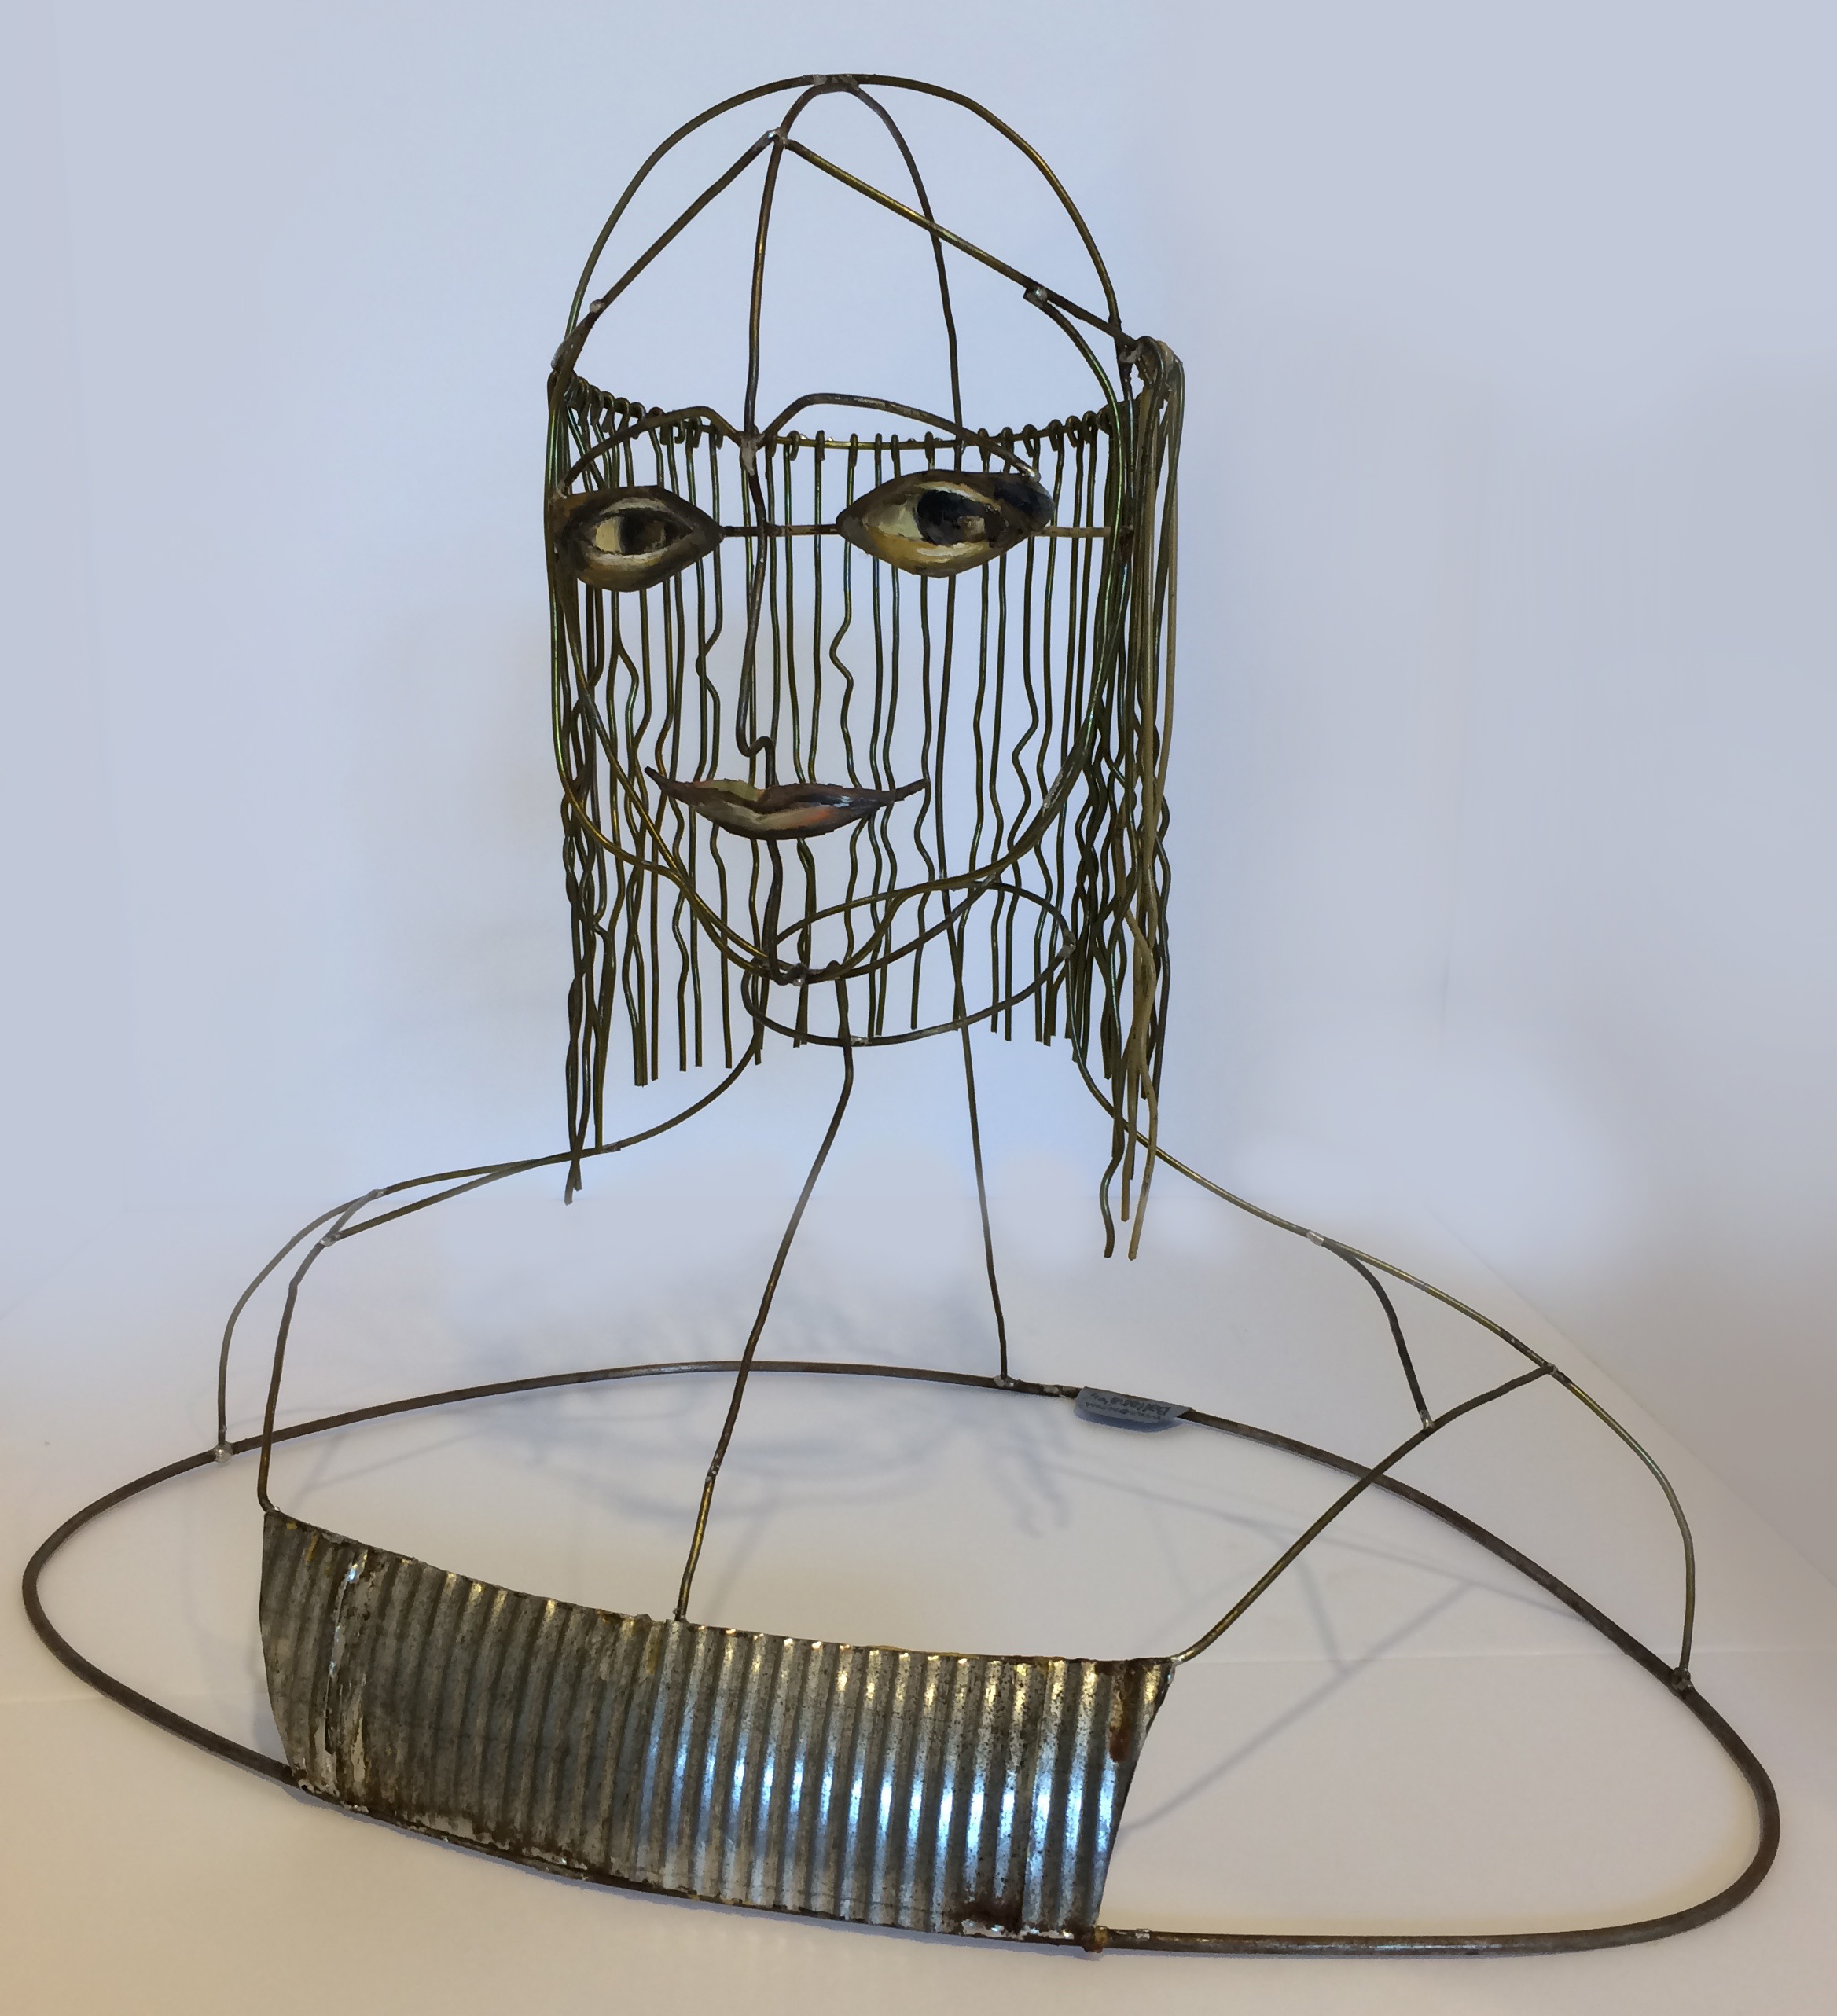  Wired Mona  Wire Sculpture.  16" x 14" x 10" 